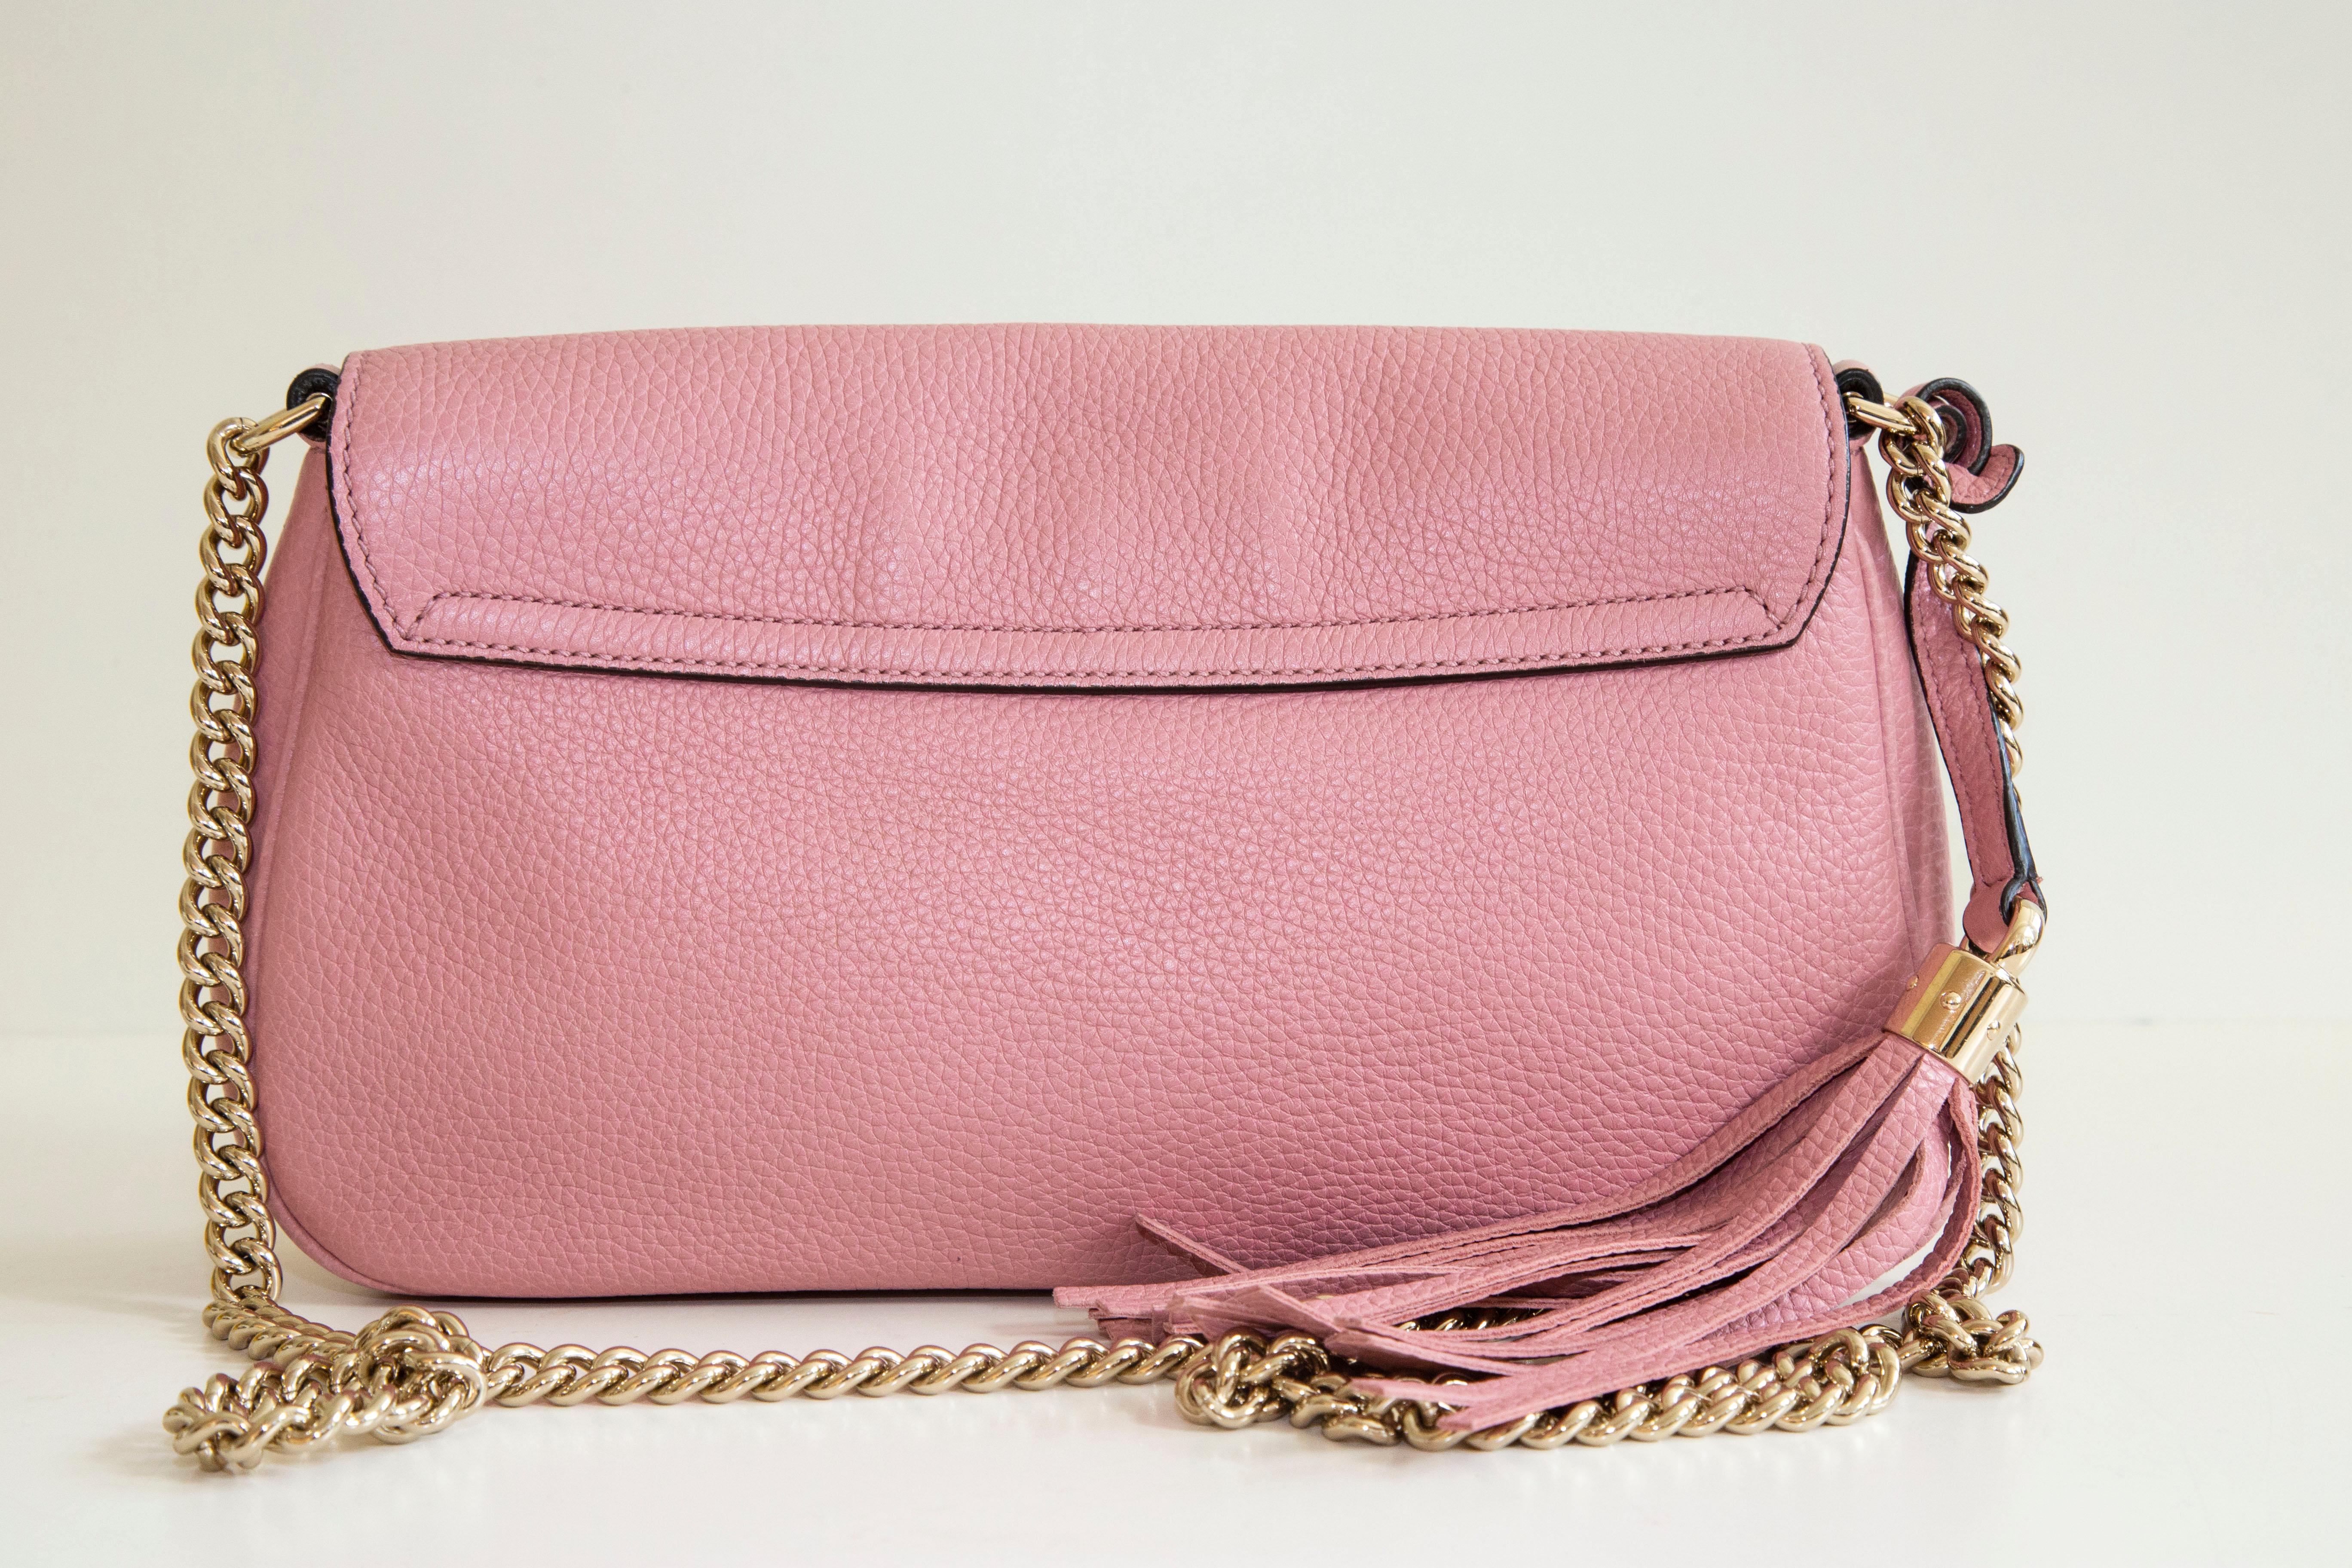 Un sac à bandoulière en cuir rose de Gucci SOHO avec une chaîne. Le sac est doté d'un rabat frontal avec fermeture magnétique. Le compartiment principal est doublé d'un tissu beige clair et contient deux poches latérales dont l'une est munie d'une